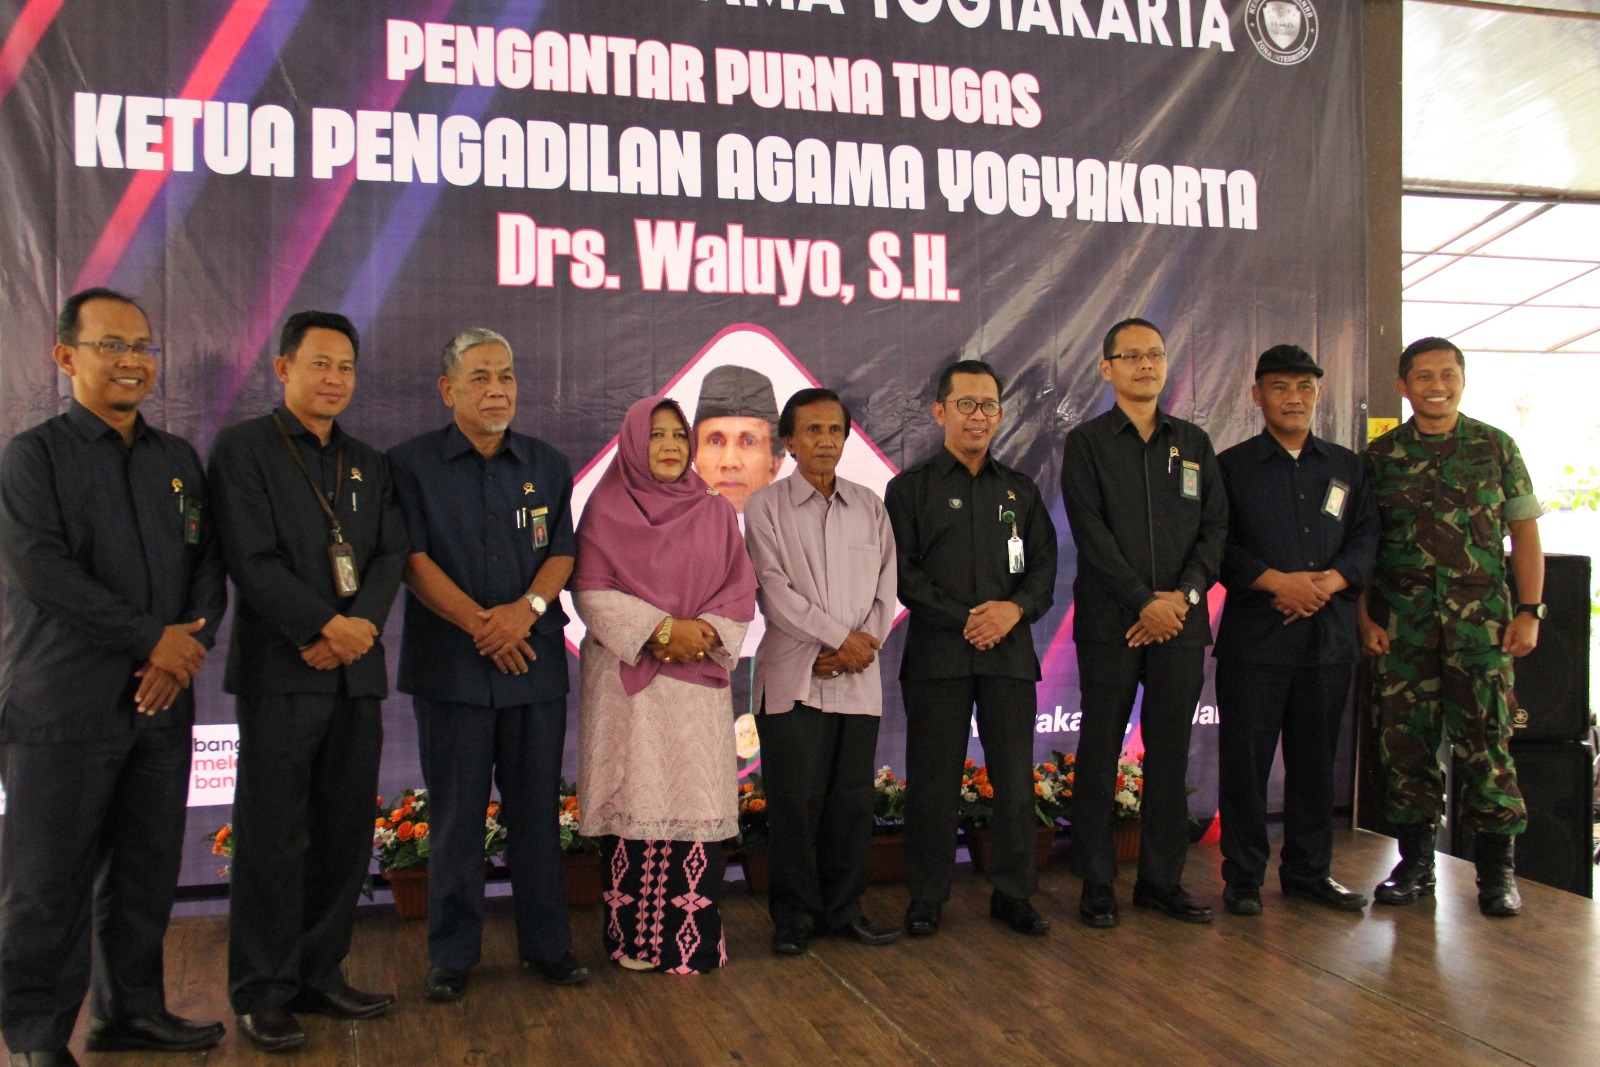 Ketua Pengadilan Negeri Yogyakarta Menghadiri Pengantar Purna Tugas Ketua Pengadilan Agama Yogyakarta